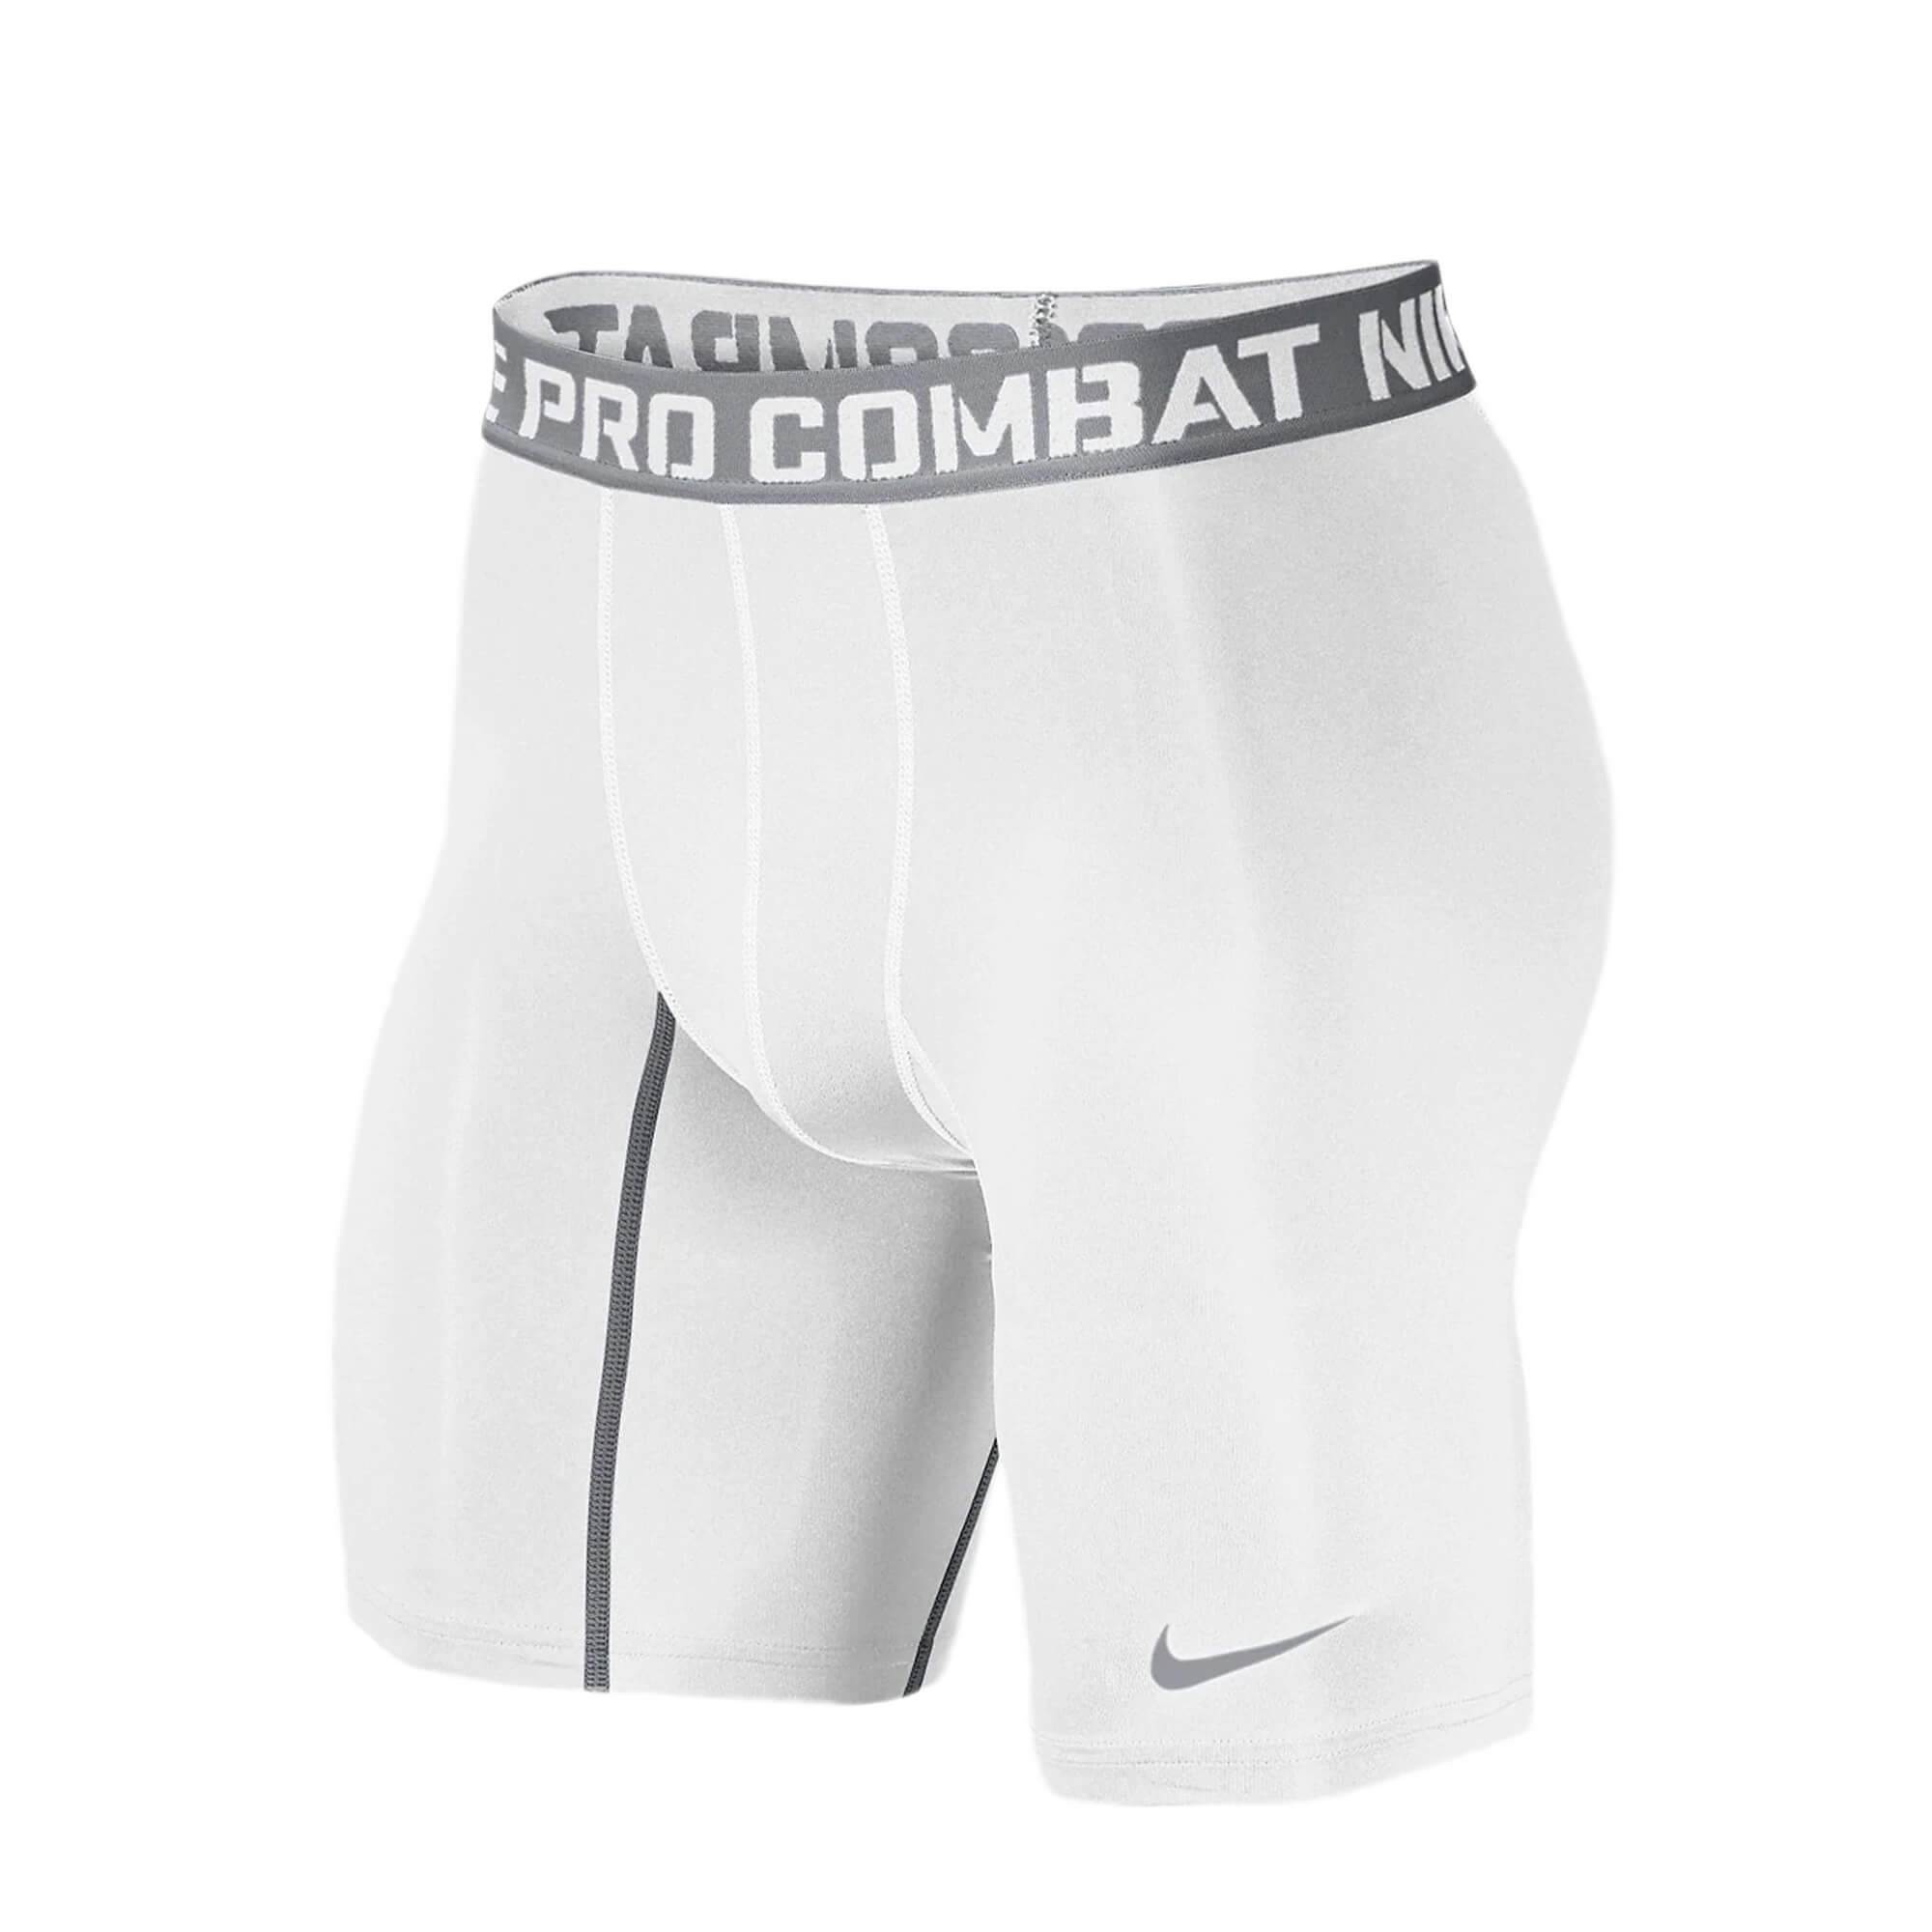 underskud damper forudsigelse Nike Men's Pro Combat Tights Shorts White/Grey – Azteca Soccer